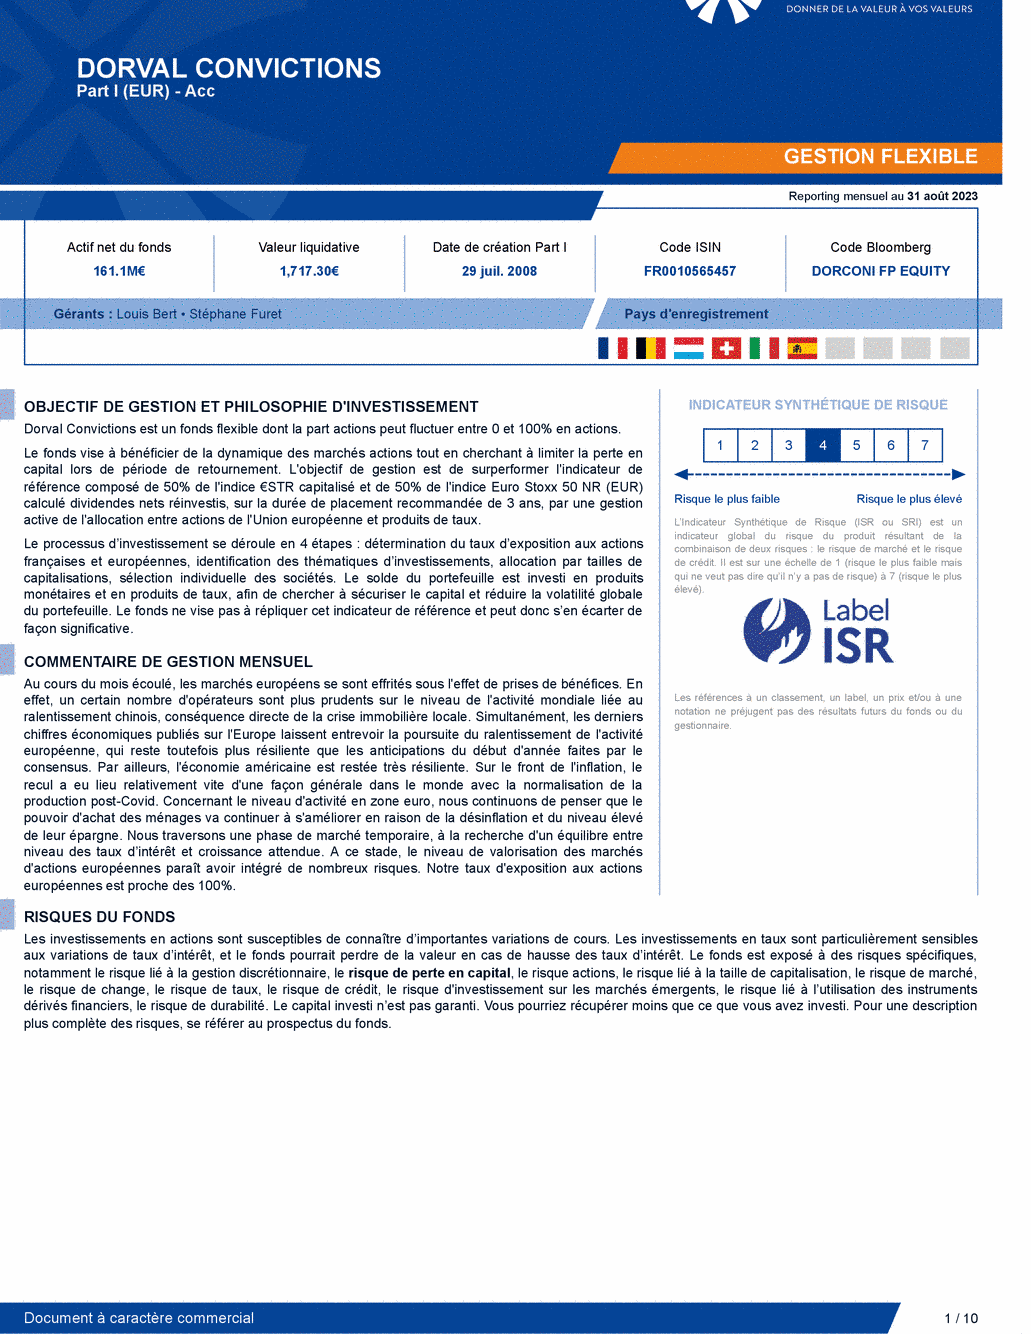 Reporting DORVAL CONVICTIONS I - 31/08/2023 - Français